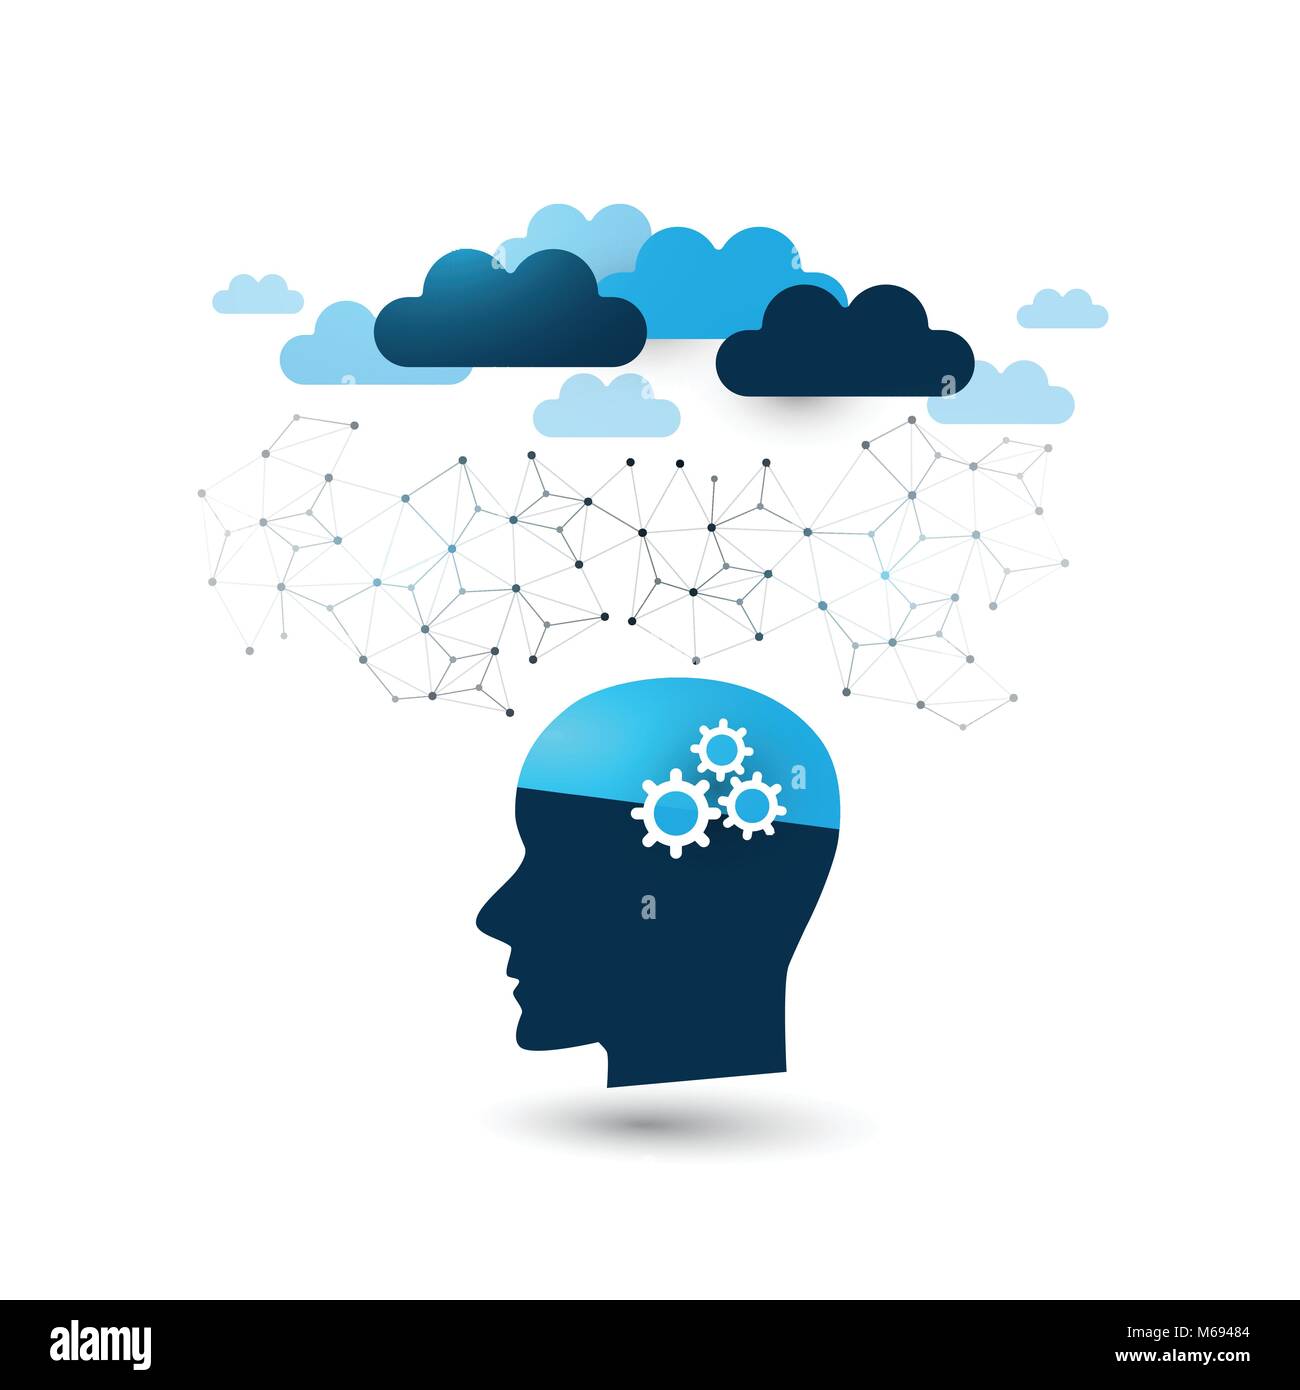 Maschinelles Lernen, Künstliche Intelligenz, Cloud Computing, Digital Support und Netzwerke Designkonzept mit Wolken und menschlichen Kopf Stock Vektor